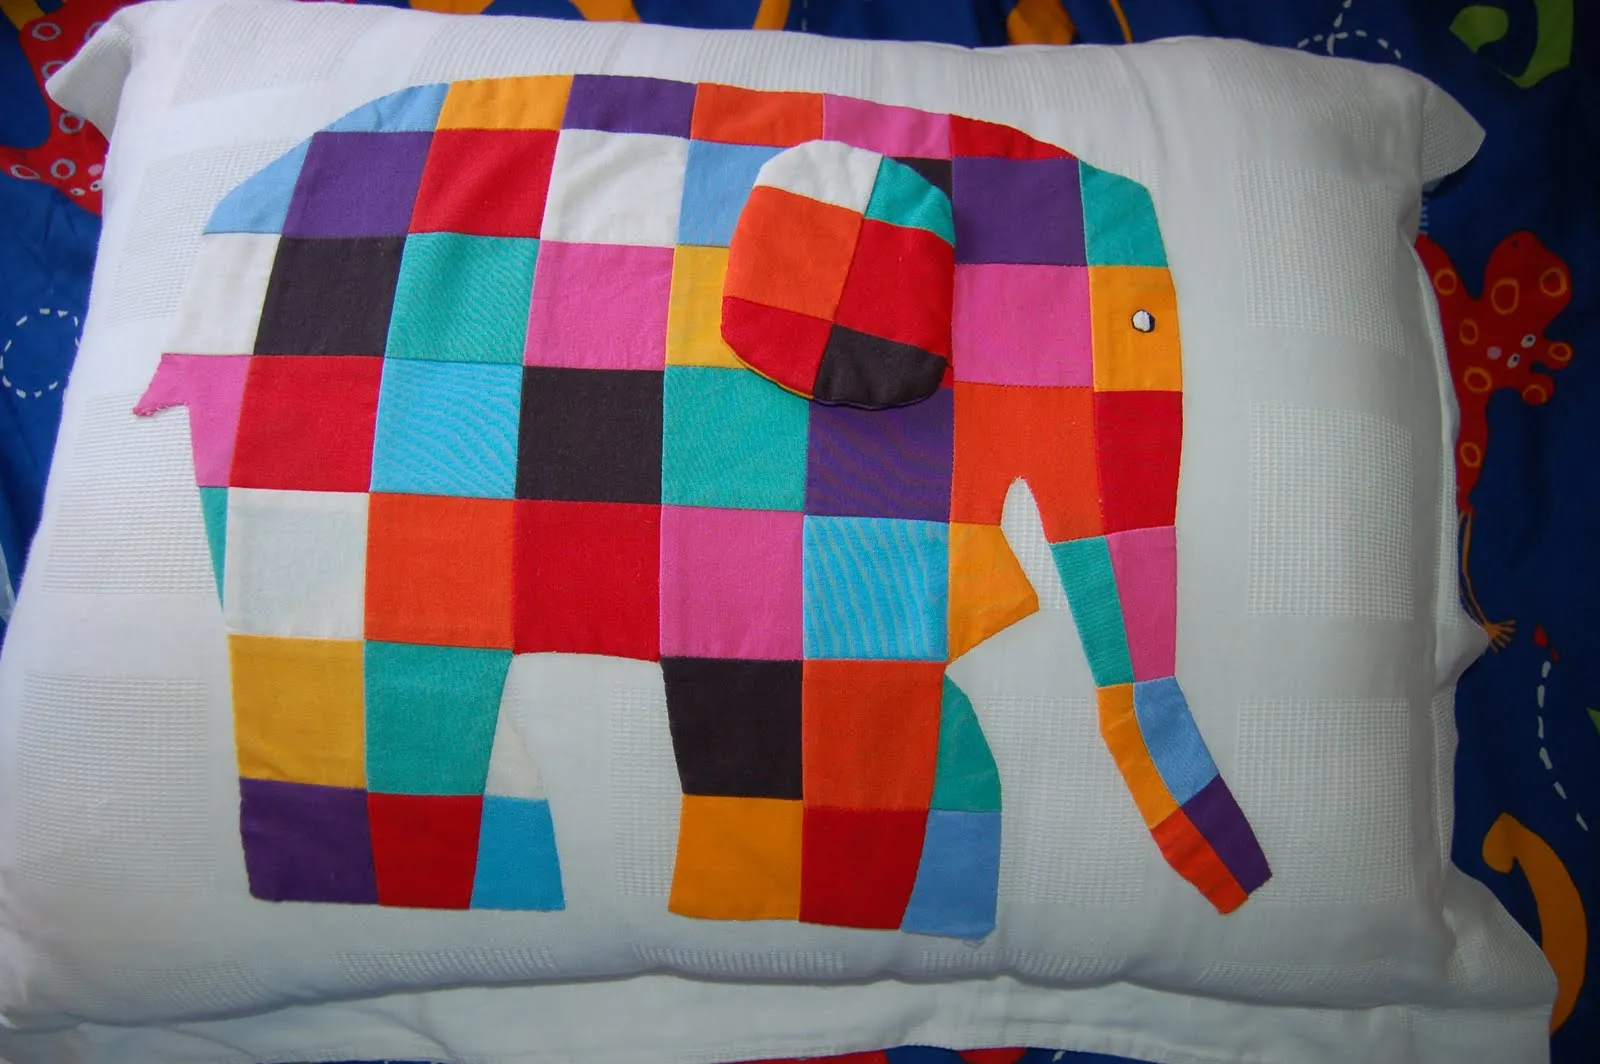 Aqui está el elefantito Elmer, el elefante patchwork como lo llamamos ...